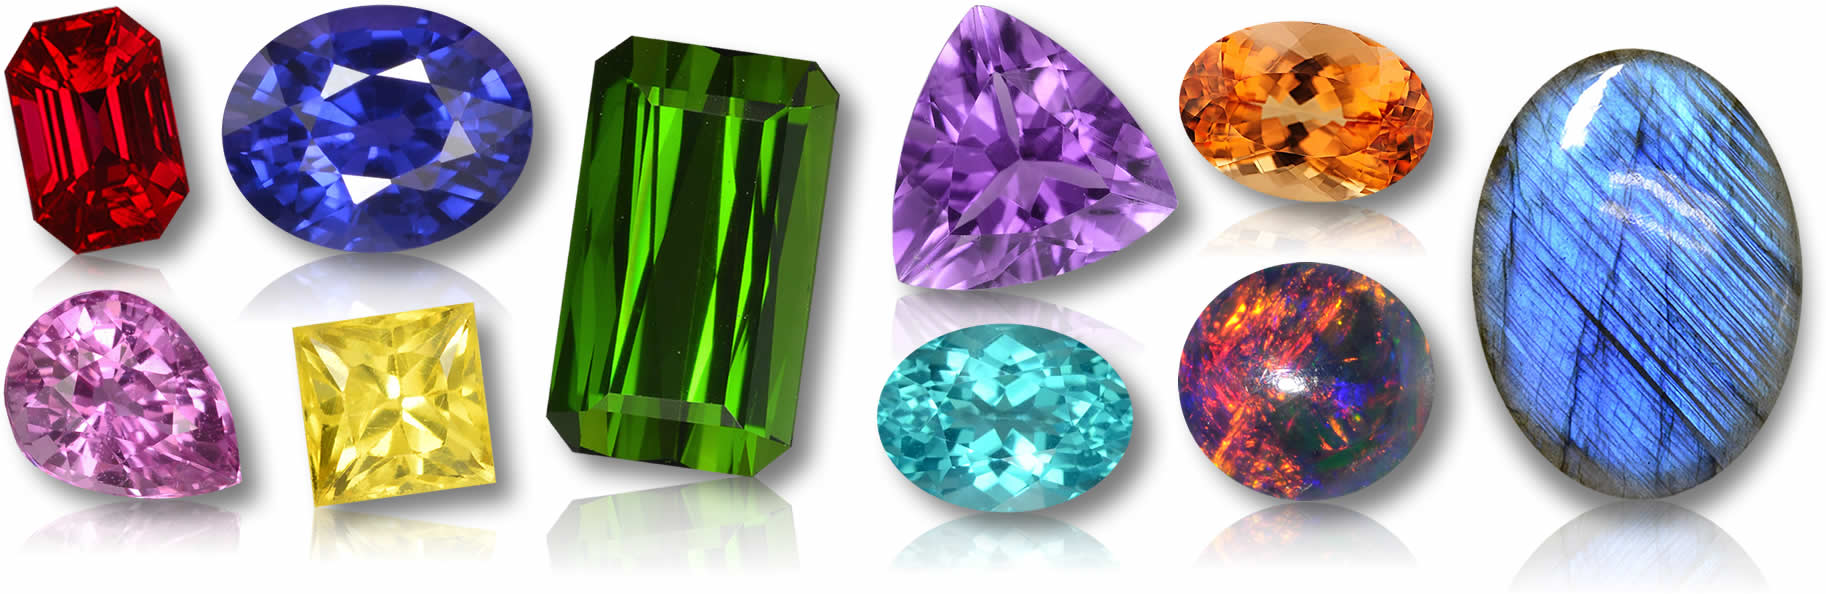 Vente de pierres précieuses - World Gems Company